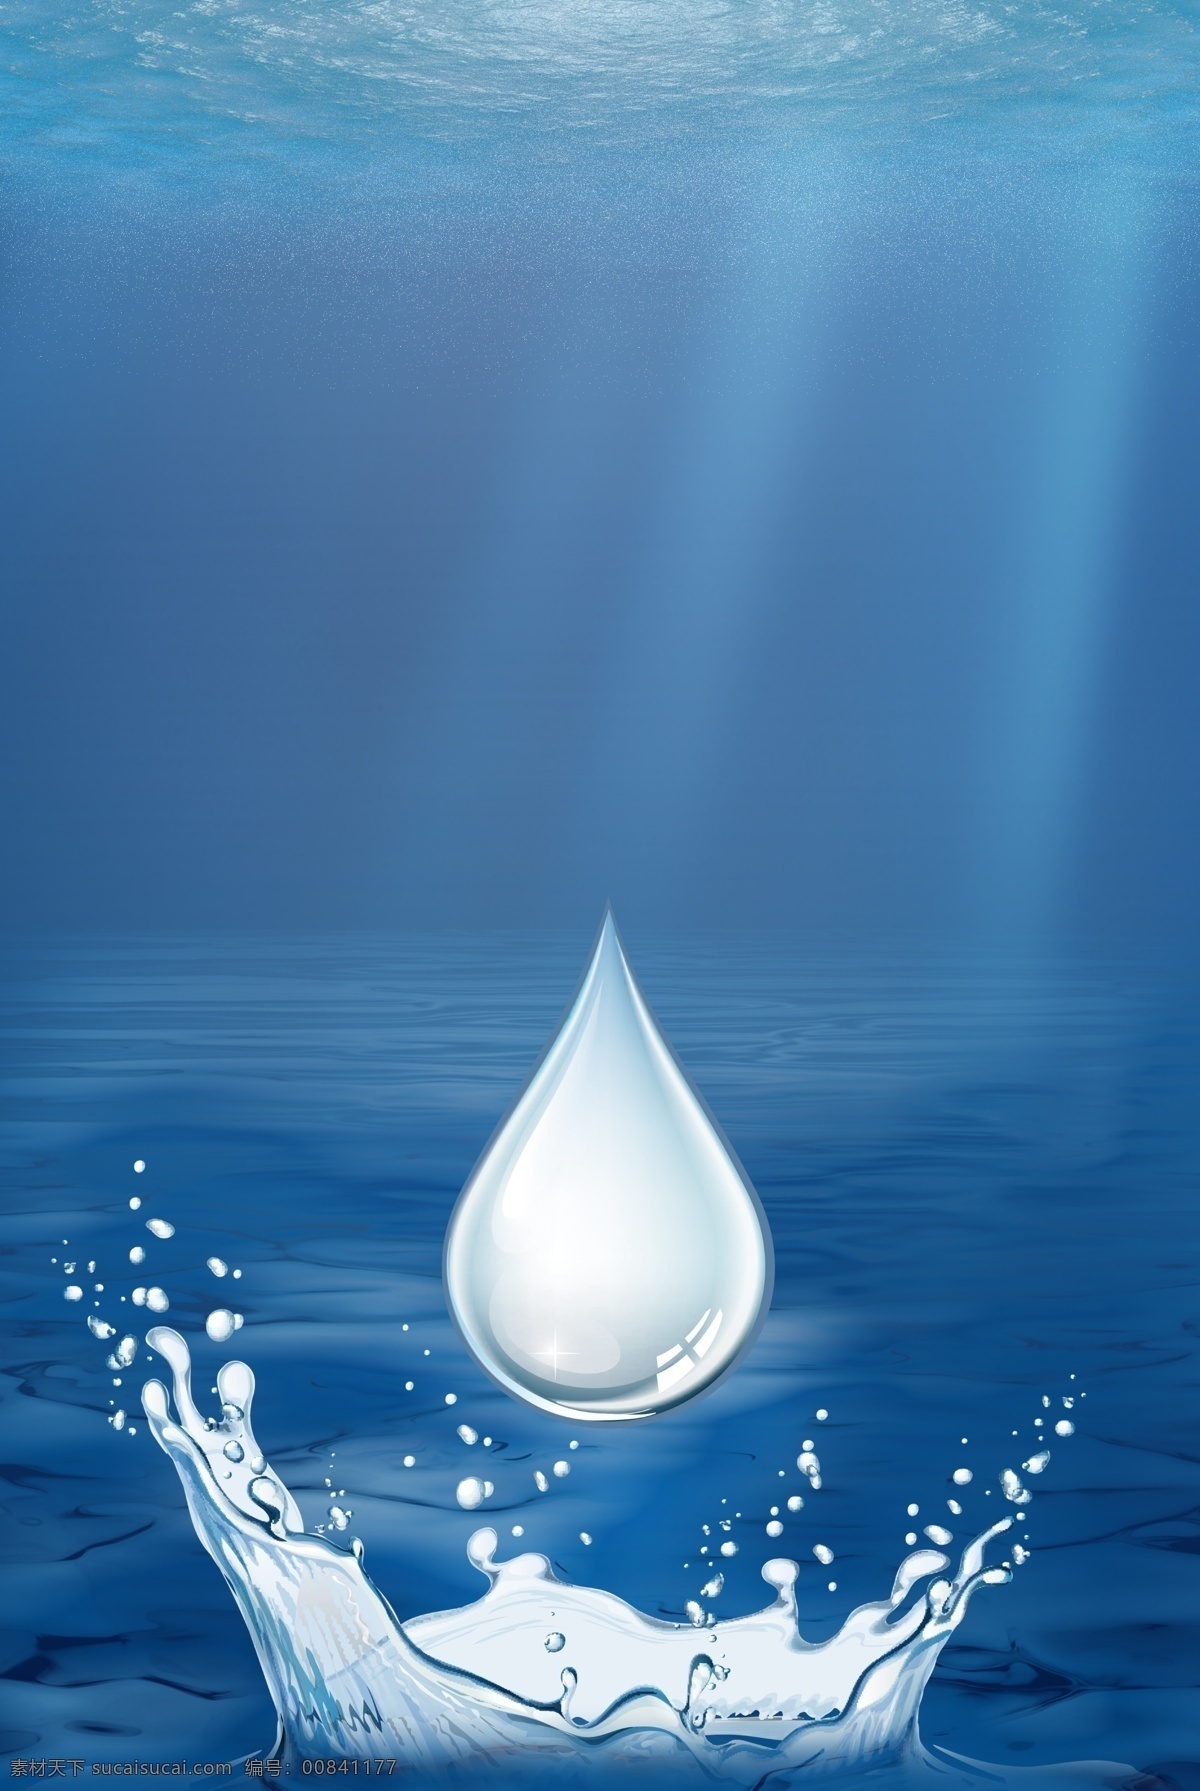 简约 蓝色 世界 水日 创意 背景 合成 世界水日 水资源 保护水资源 环保 节约用水 清新 水滴 水花